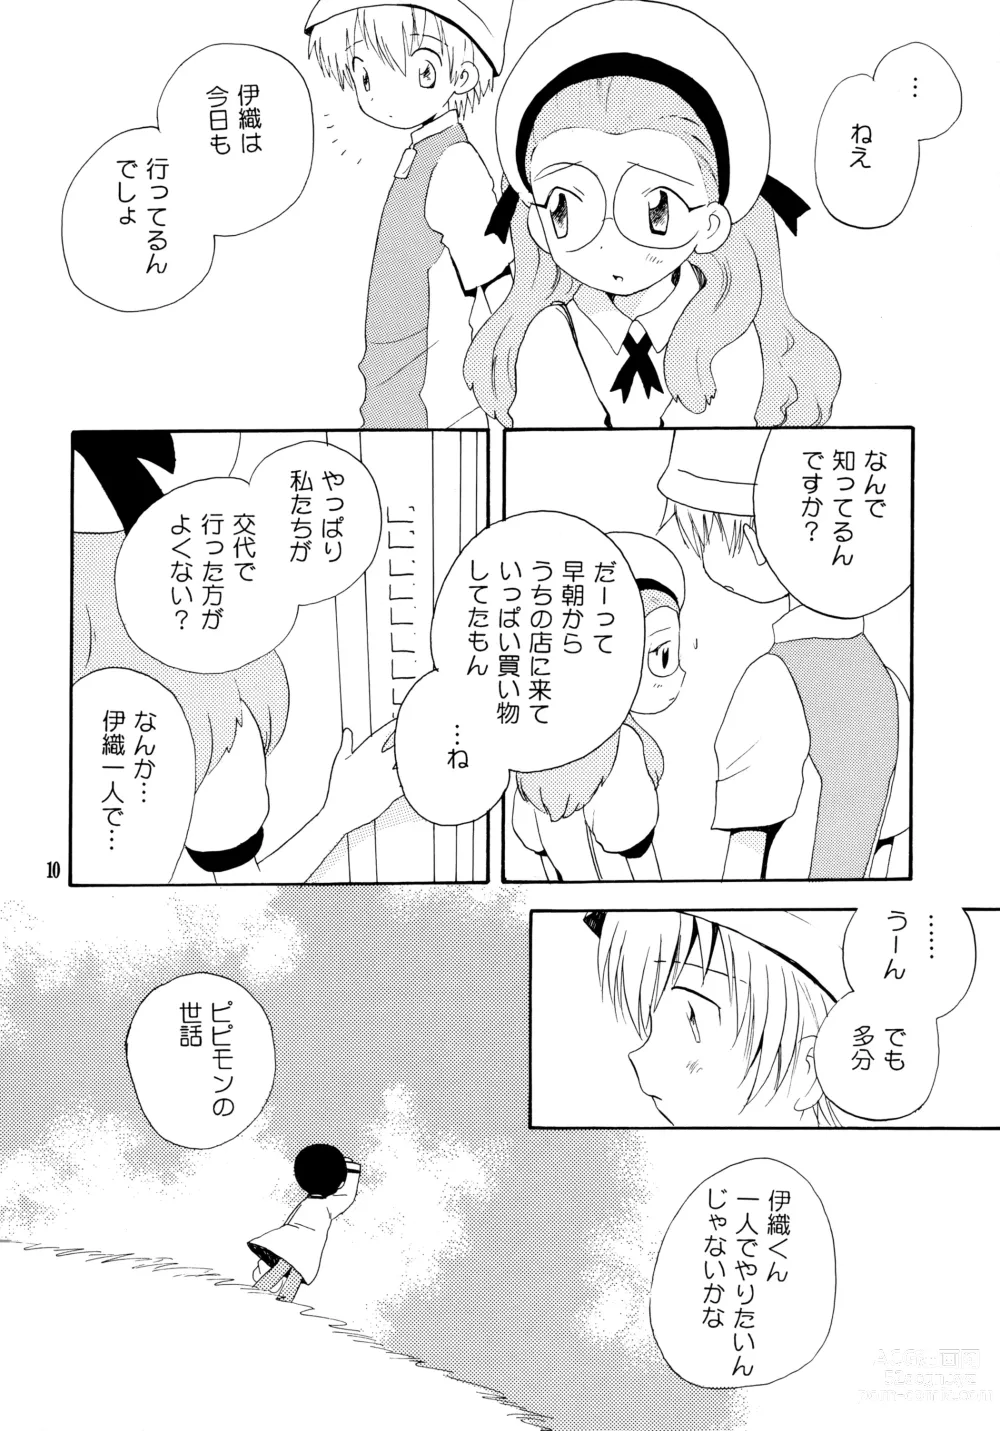 Page 9 of doujinshi Yorokobi mo Kanashimi mo Ikutoshitsuki